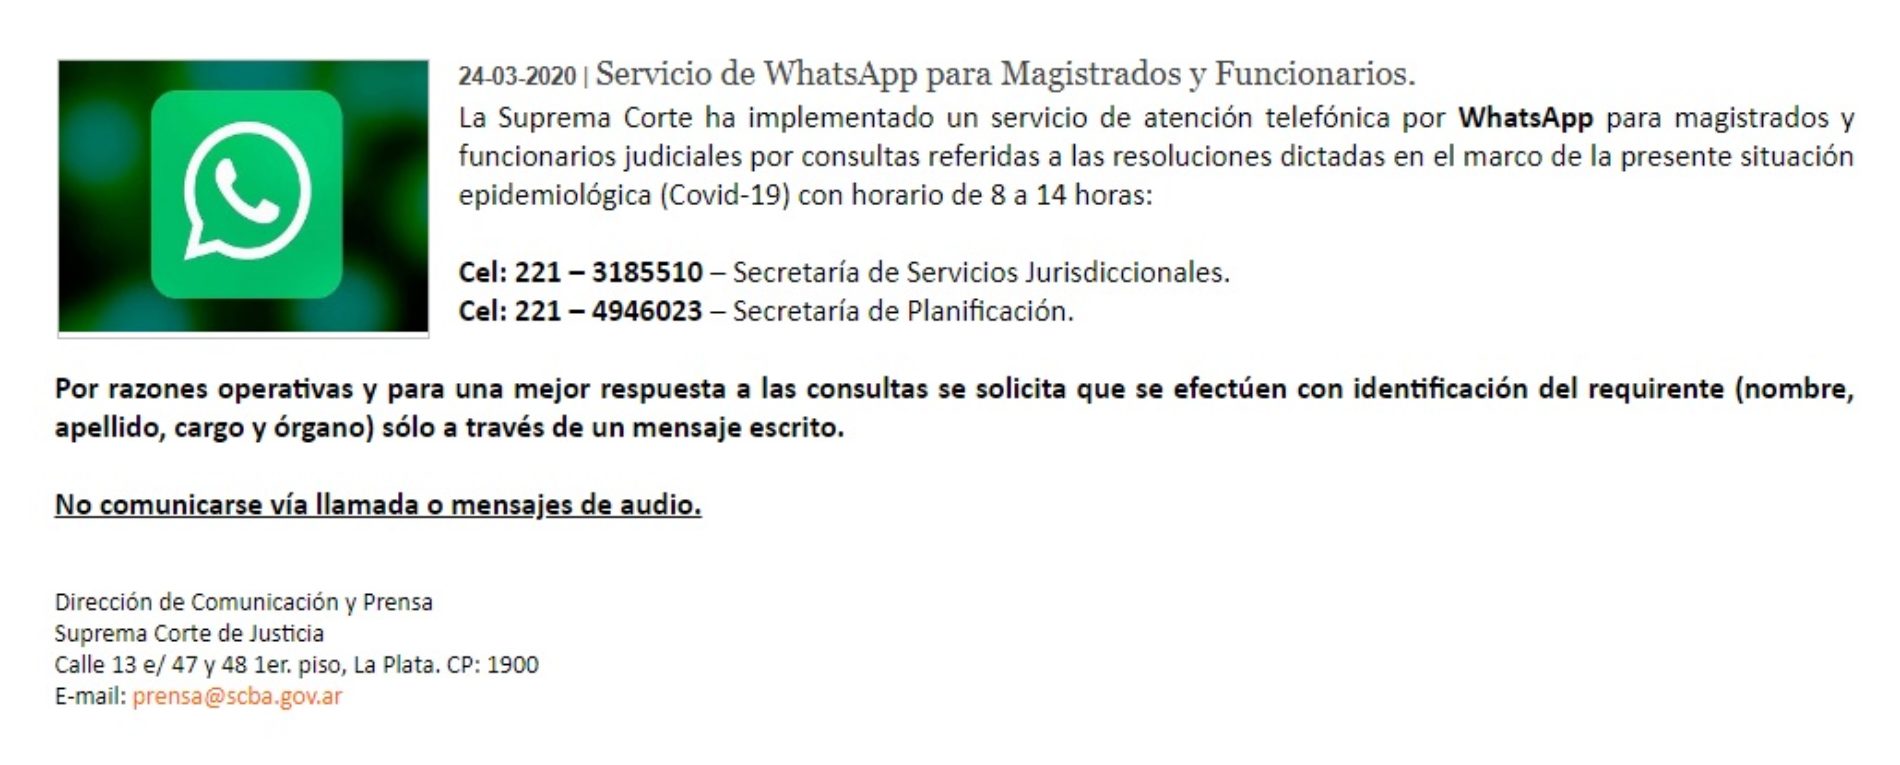 S.C.J.B.A – servicio de atención telefónica por WhatsApp para magistrados y funcionarios judiciales.